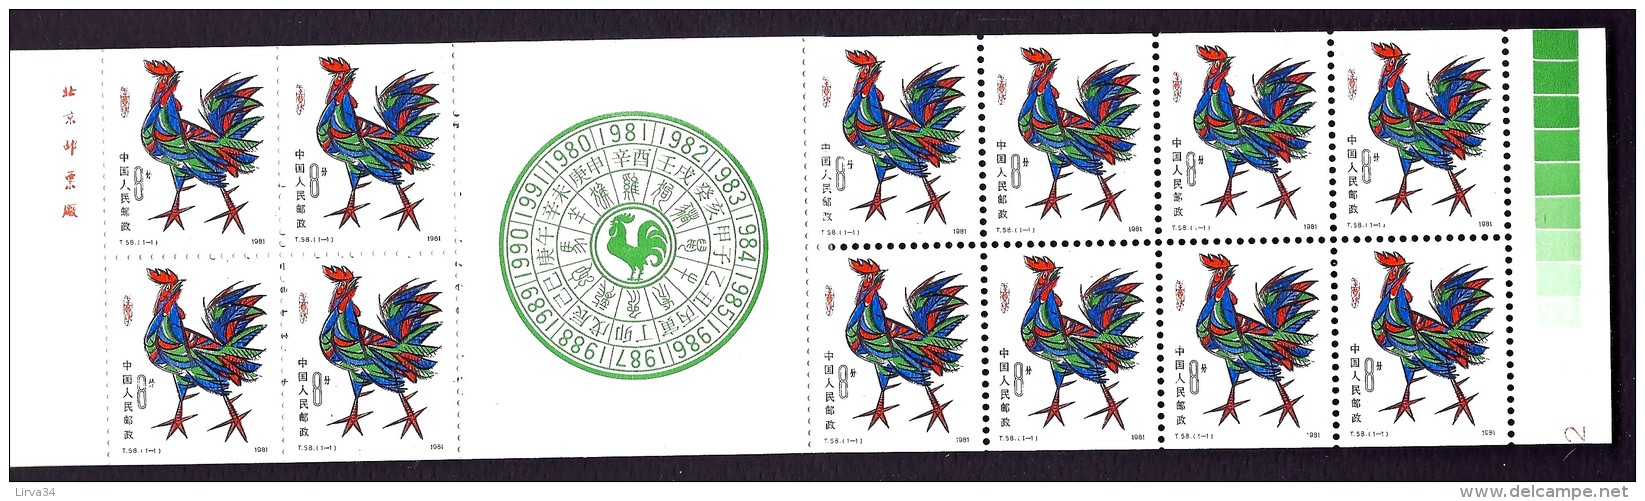 CARNET DE 1981- 12 TIMBRES DE CHINE- COQ POLYCHROME N° 2387 DENTELÉ 3 COTÉS- NEUFS** LUXE- - Unused Stamps